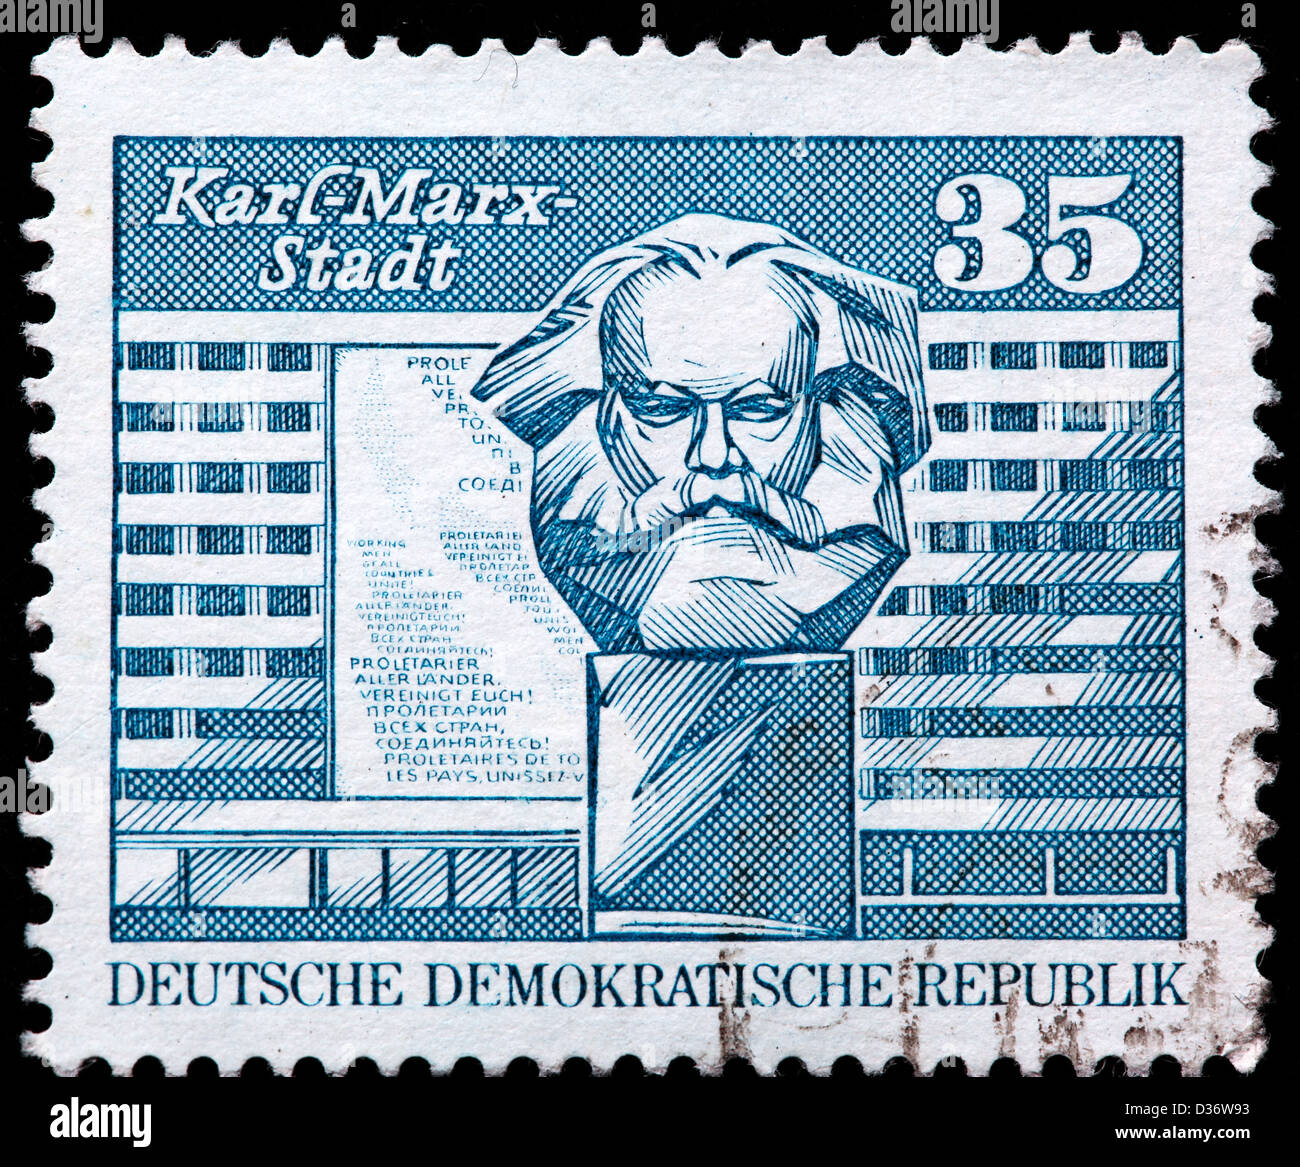 Marx monumento, Karl-Marx-Stadt, sello, Alemania, 1973 Foto de stock